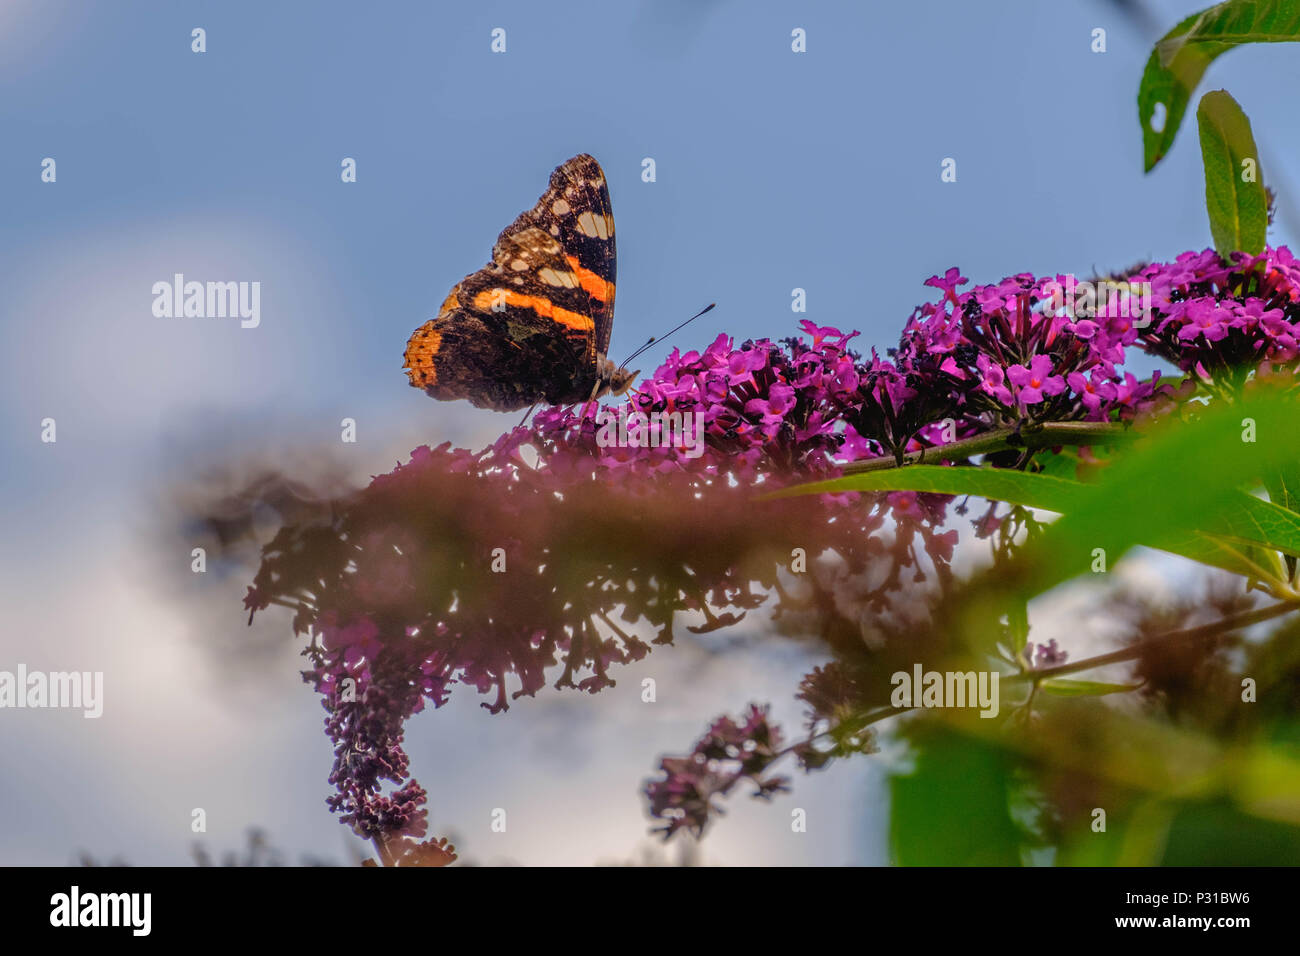 Un 'papillon' Vanessa atalanta est assis sur un 'Buddleia Davidii', mieux connu sous le nom de bush-papillon. Il aime le nectar des fleurs violettes. Banque D'Images